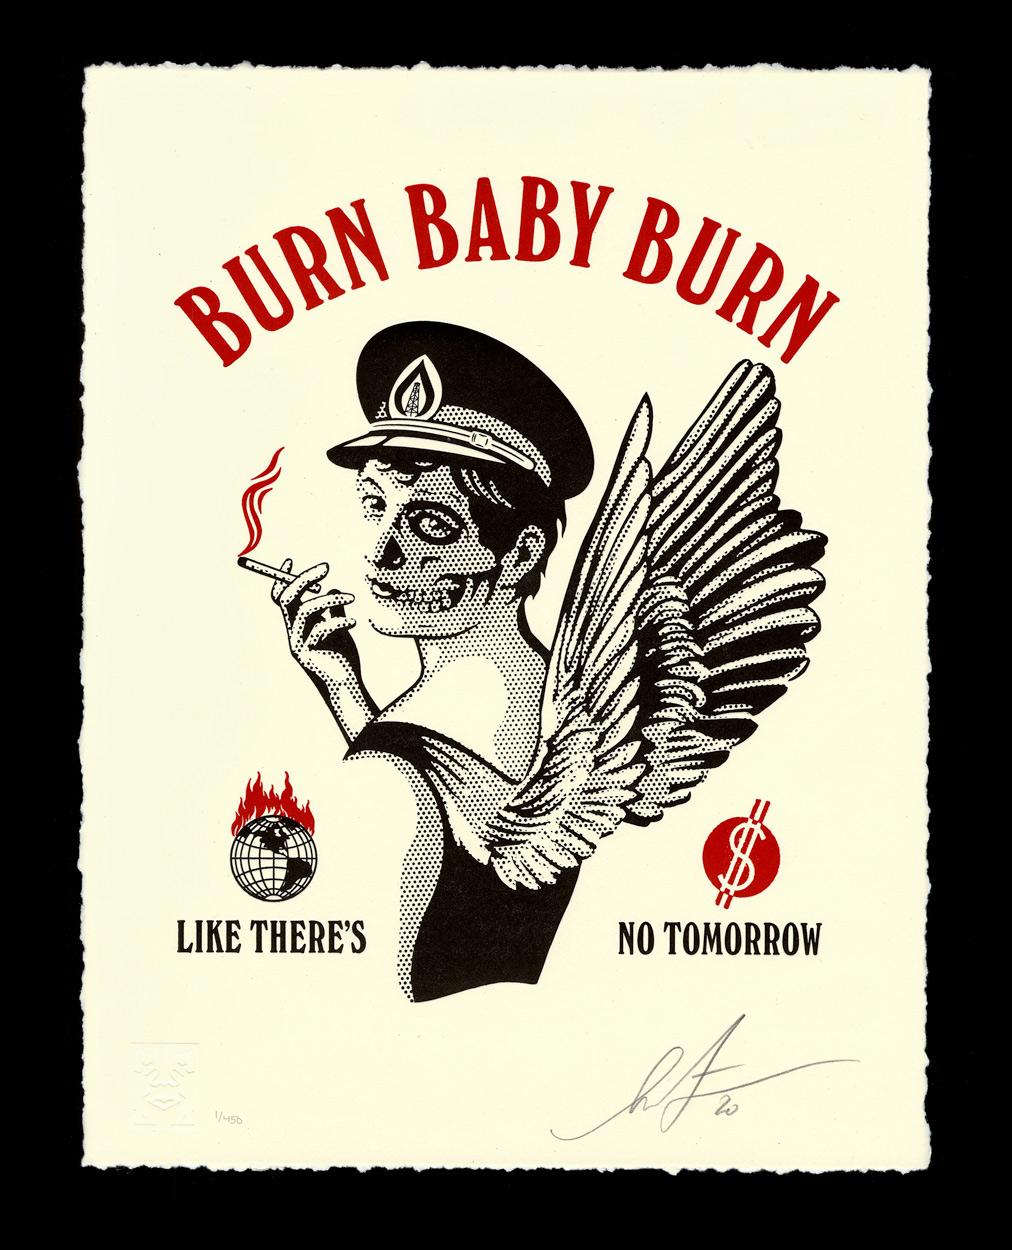 Burn Baby Burn, inspiré de l'esthétique du rock 'n' roll "vivre vite - mourir jeune", est une critique de certaines habitudes néfastes auxquelles nous sommes accros. Non seulement les effets nocifs de la combustion des combustibles fossiles, mais